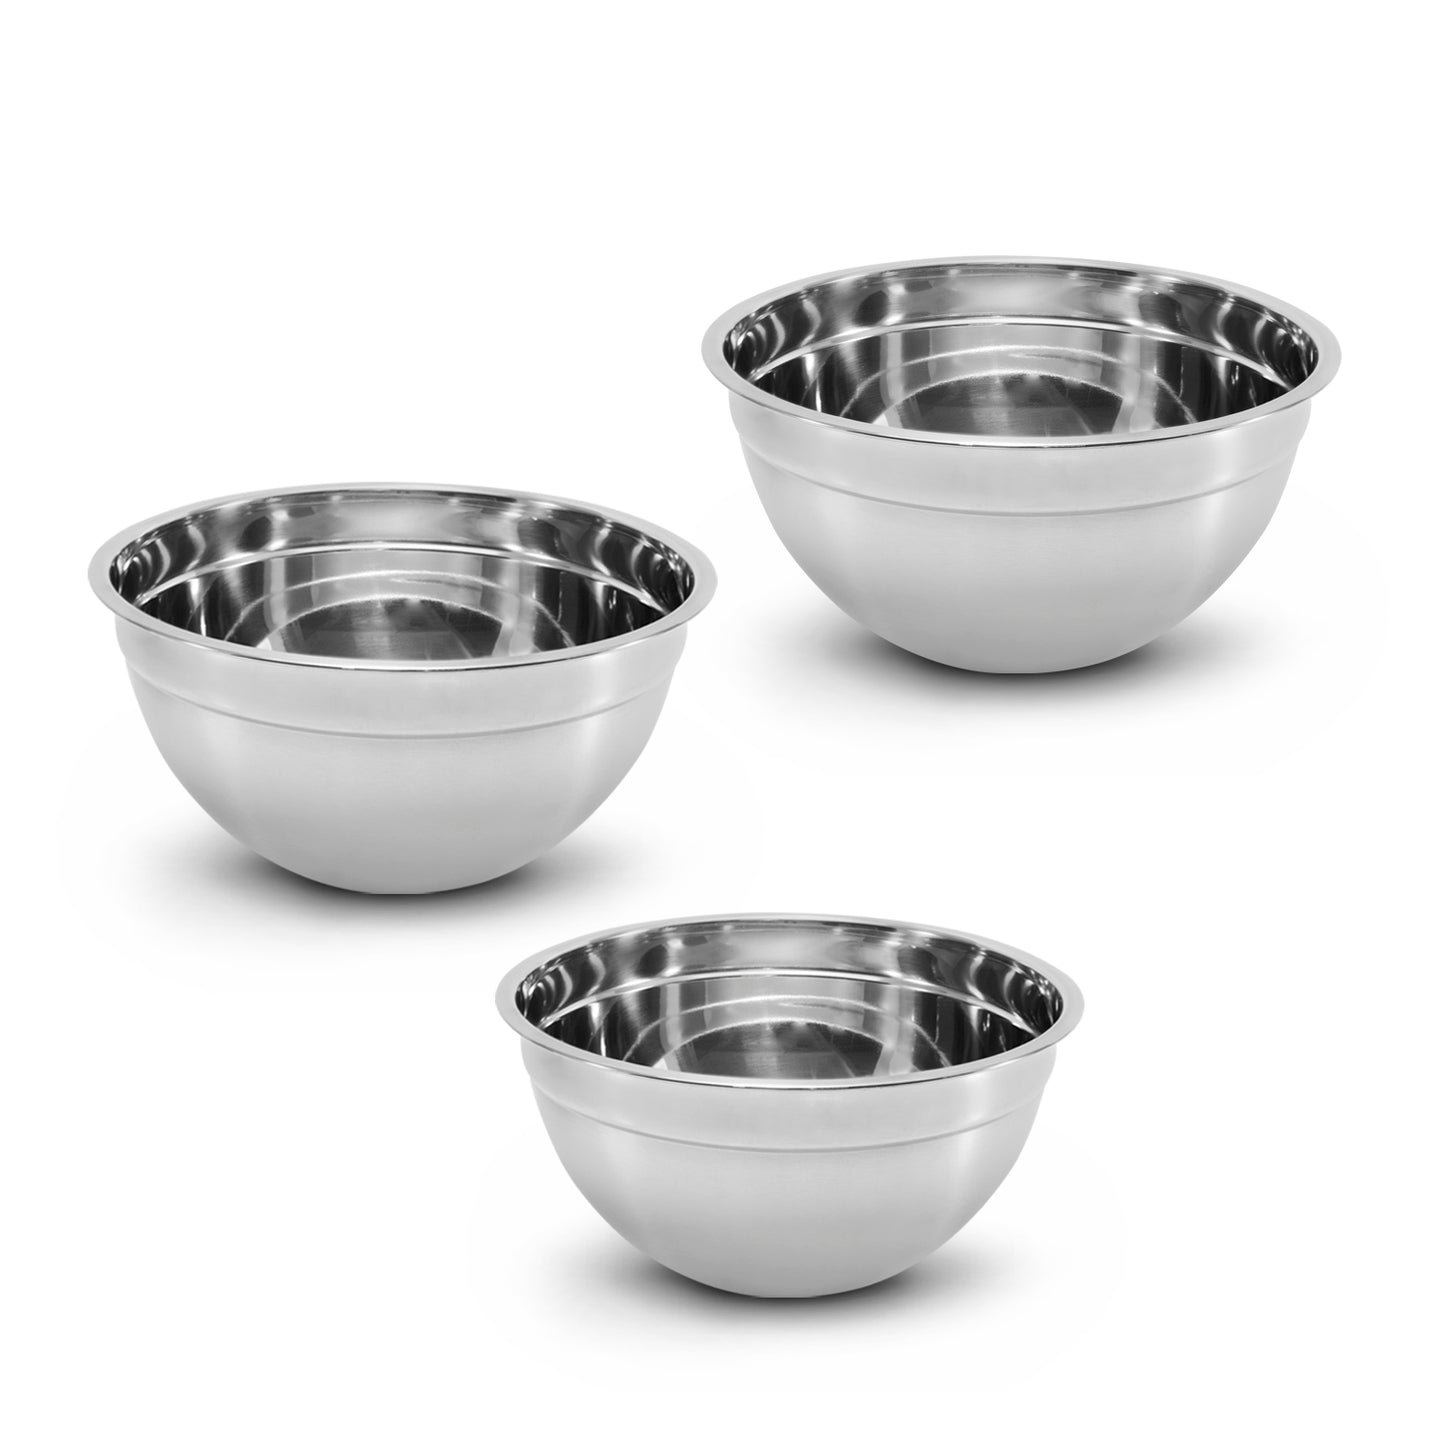 Kit de 3 bowls de acero inoxidable